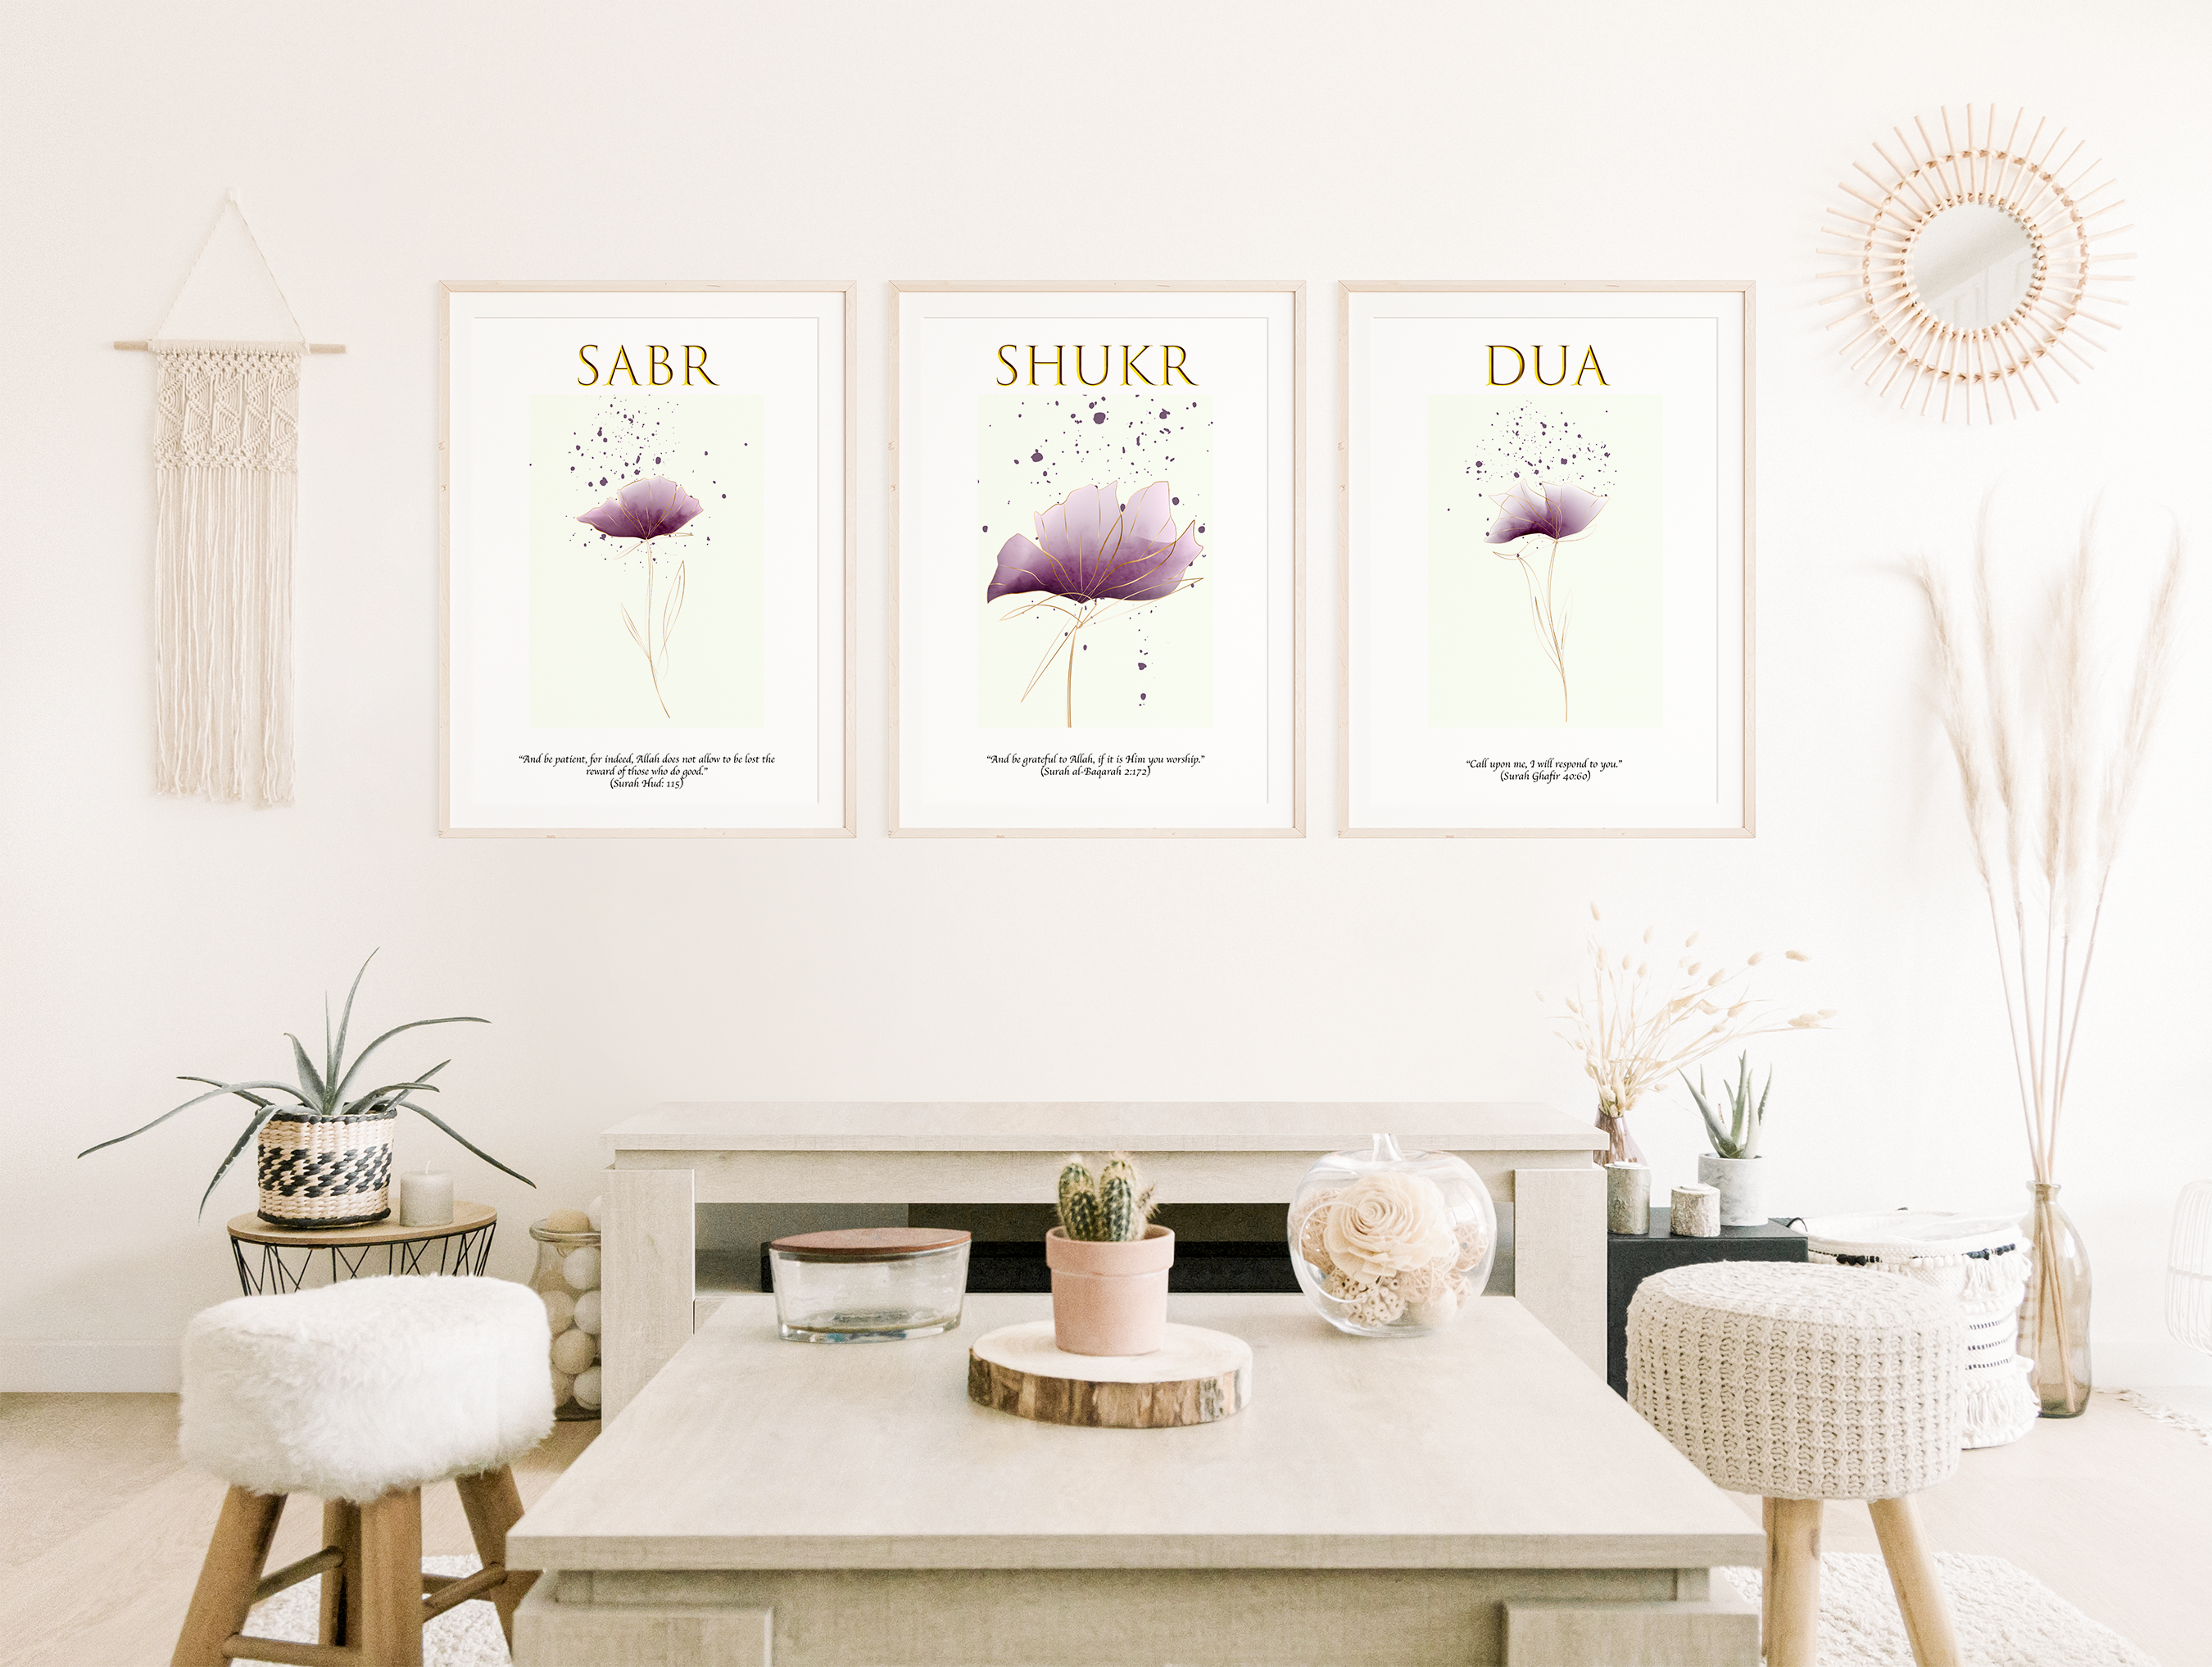 Set of 3 Sabr, Shukr, Dua Calligraphy wall art print